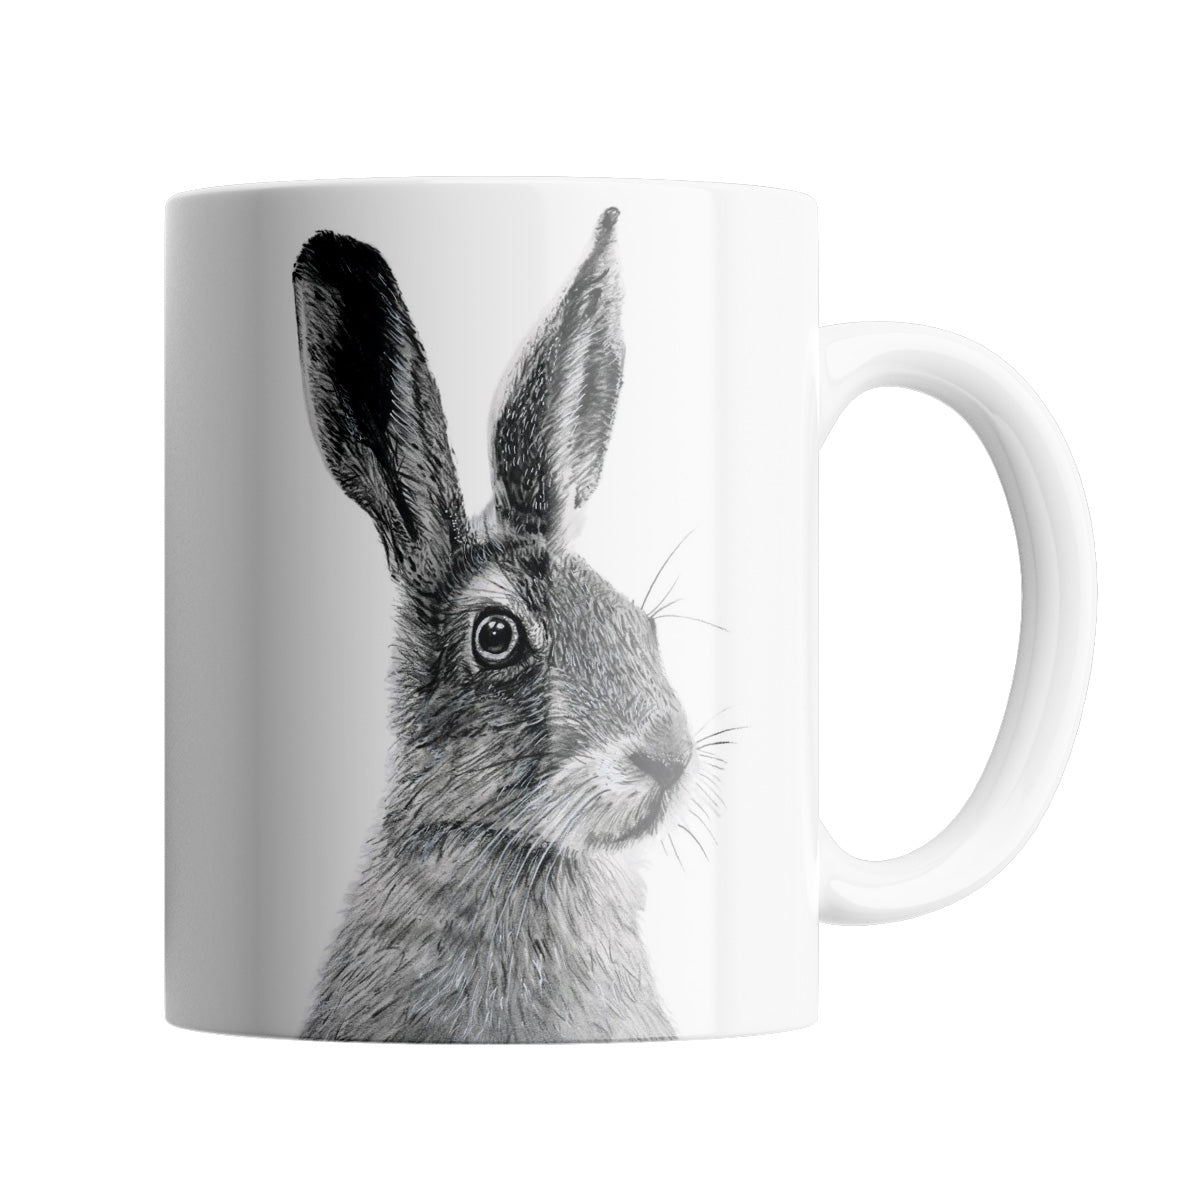 Floras the Hare 11oz Ceramic Mug